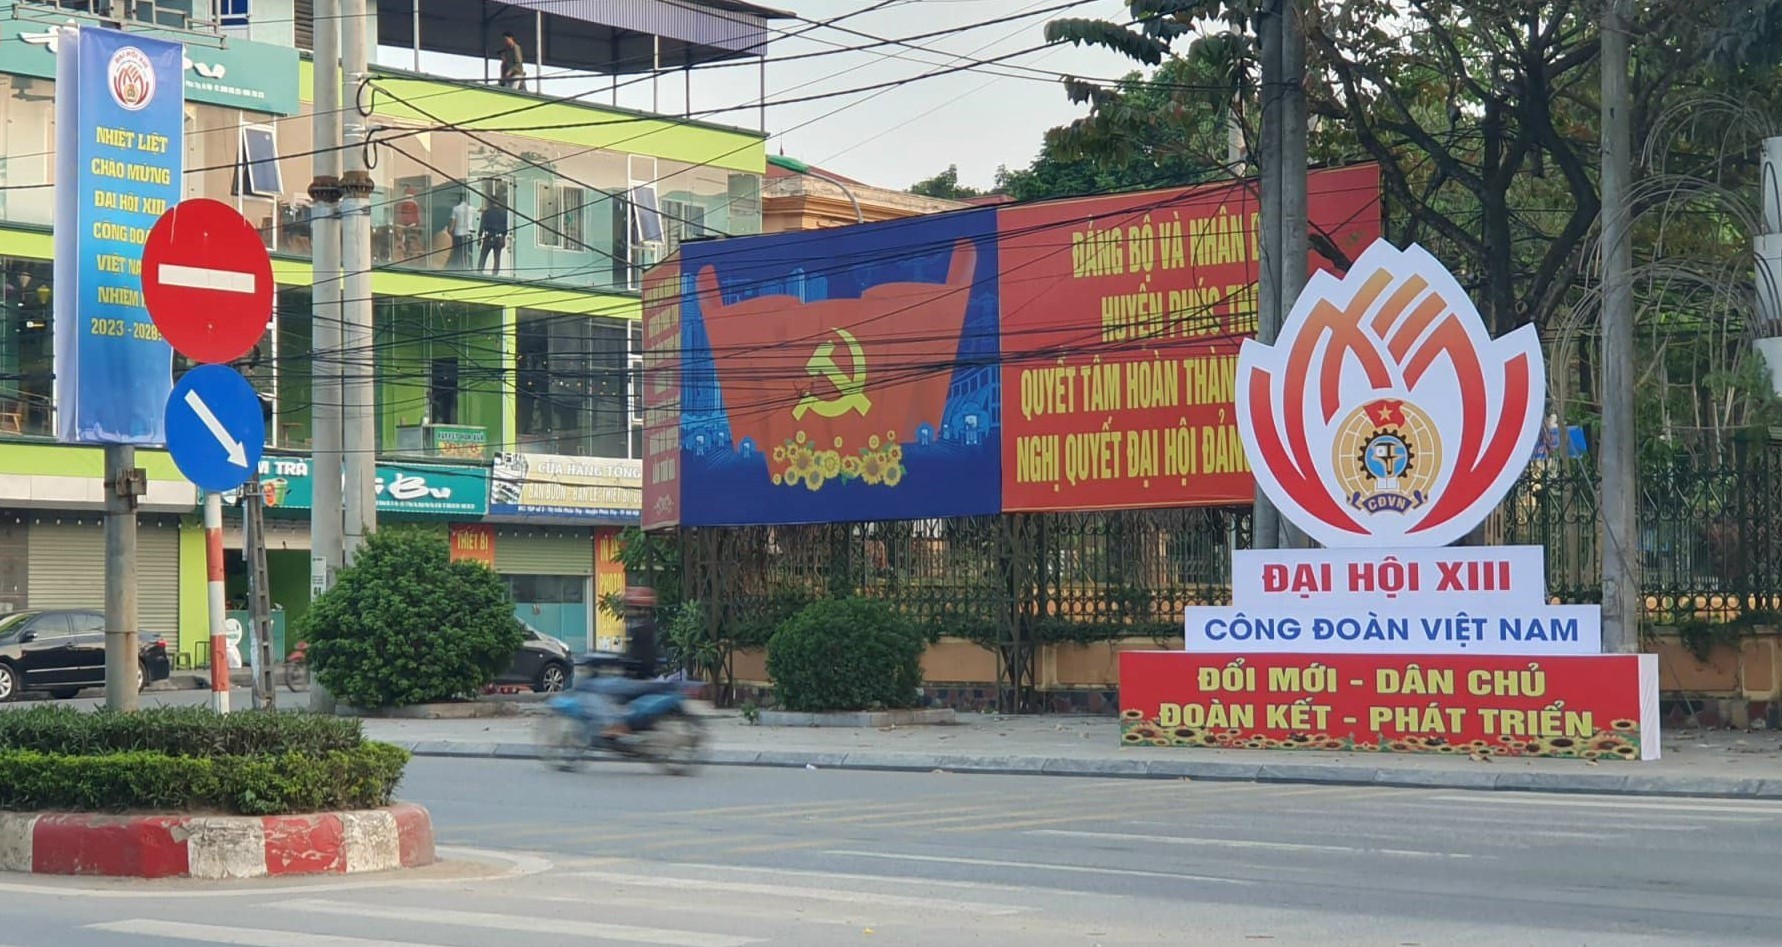 Hà Nội: Tưng bừng chào mừng Đại hội XIII Công đoàn Việt Nam